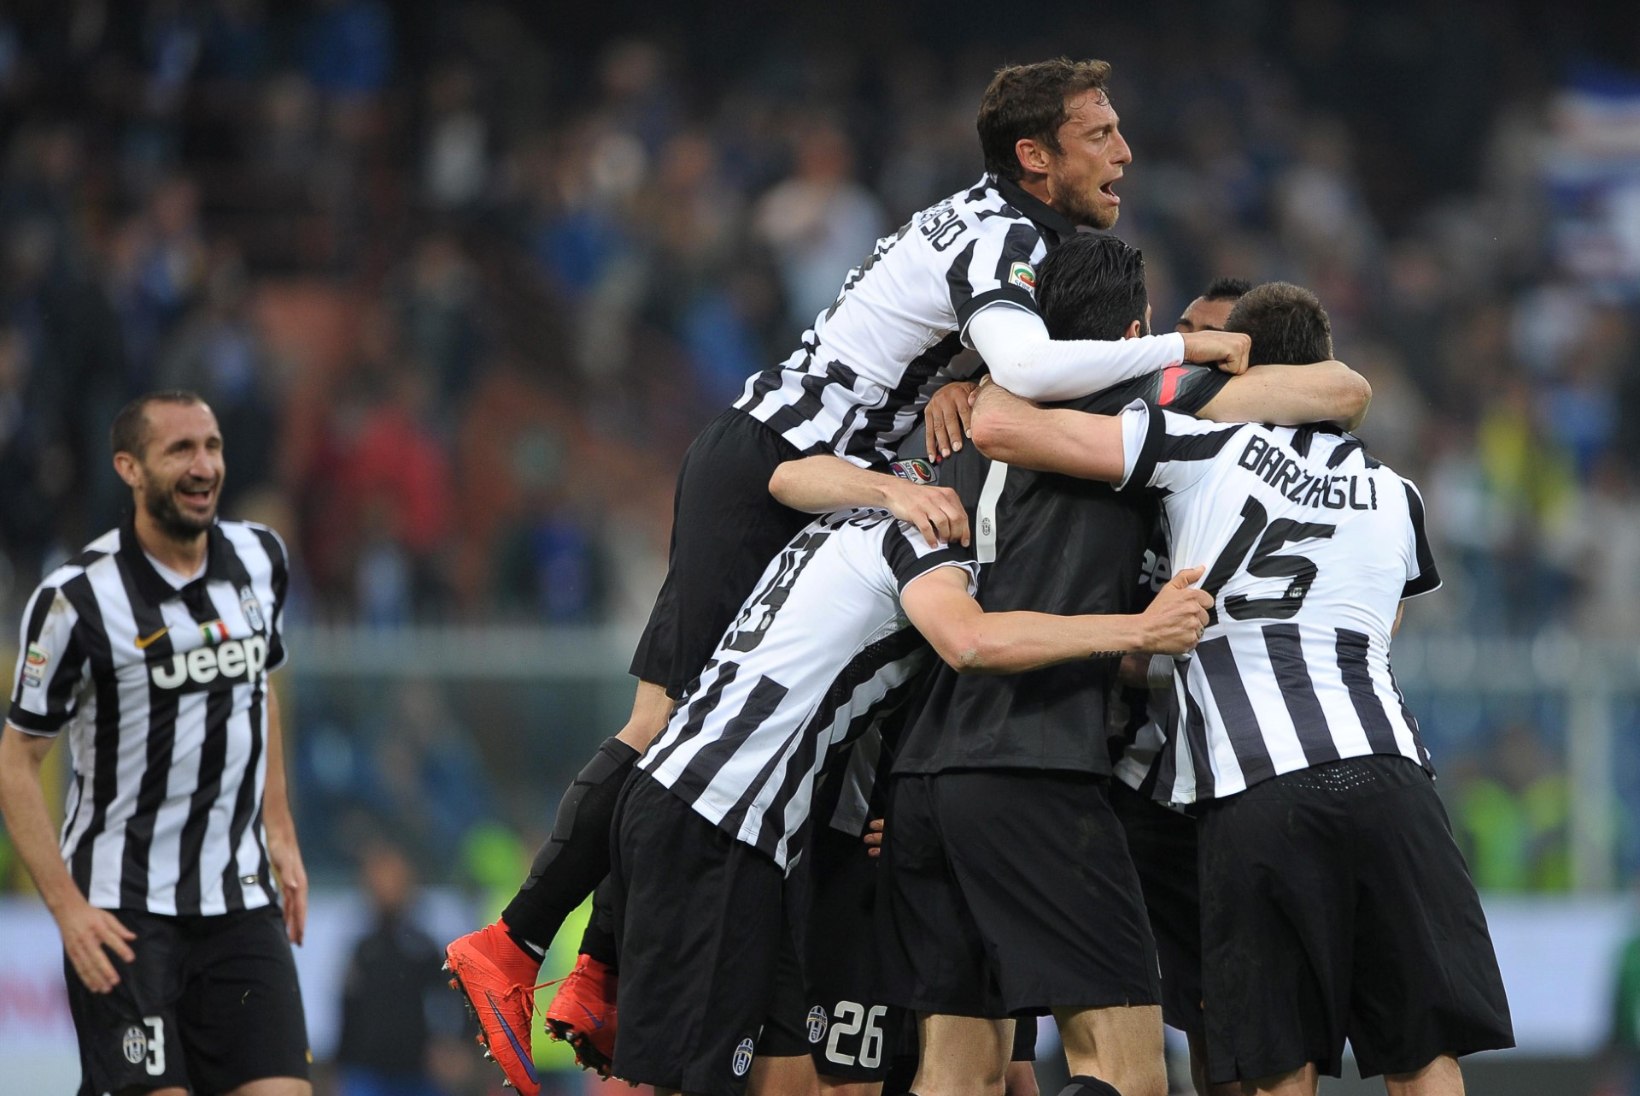 VIDEO ja GALERII: Torino Juventus krooniti neljandat aastat järjest Itaalia meistriks